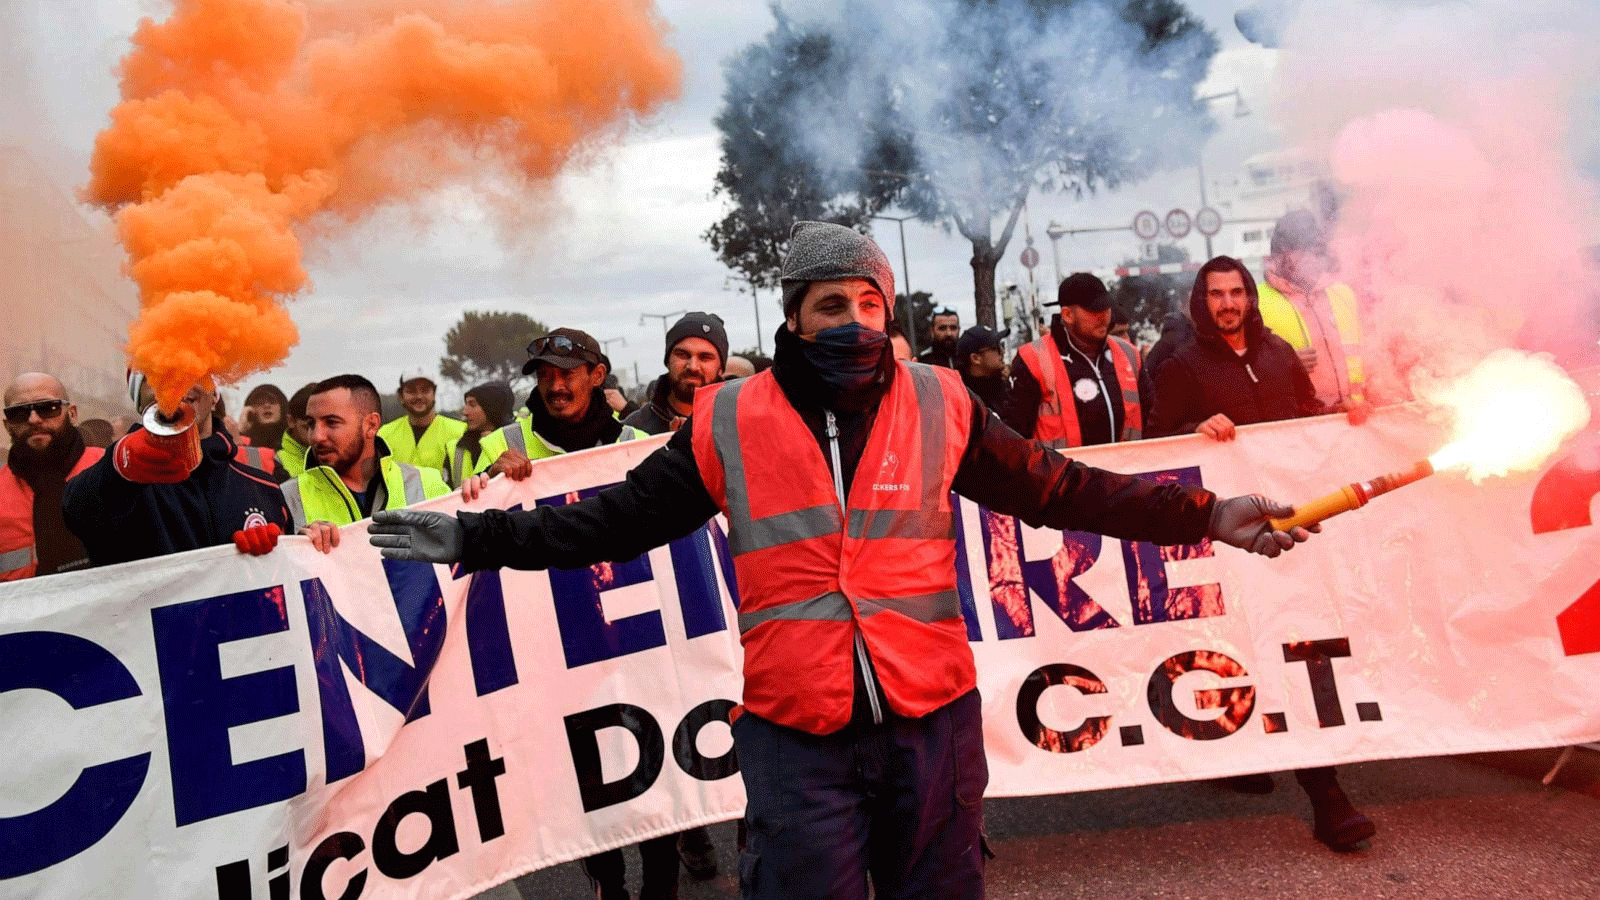 إضراب العمال في باريس بسبب تغييرات في خطة التقاعد الفرنسية